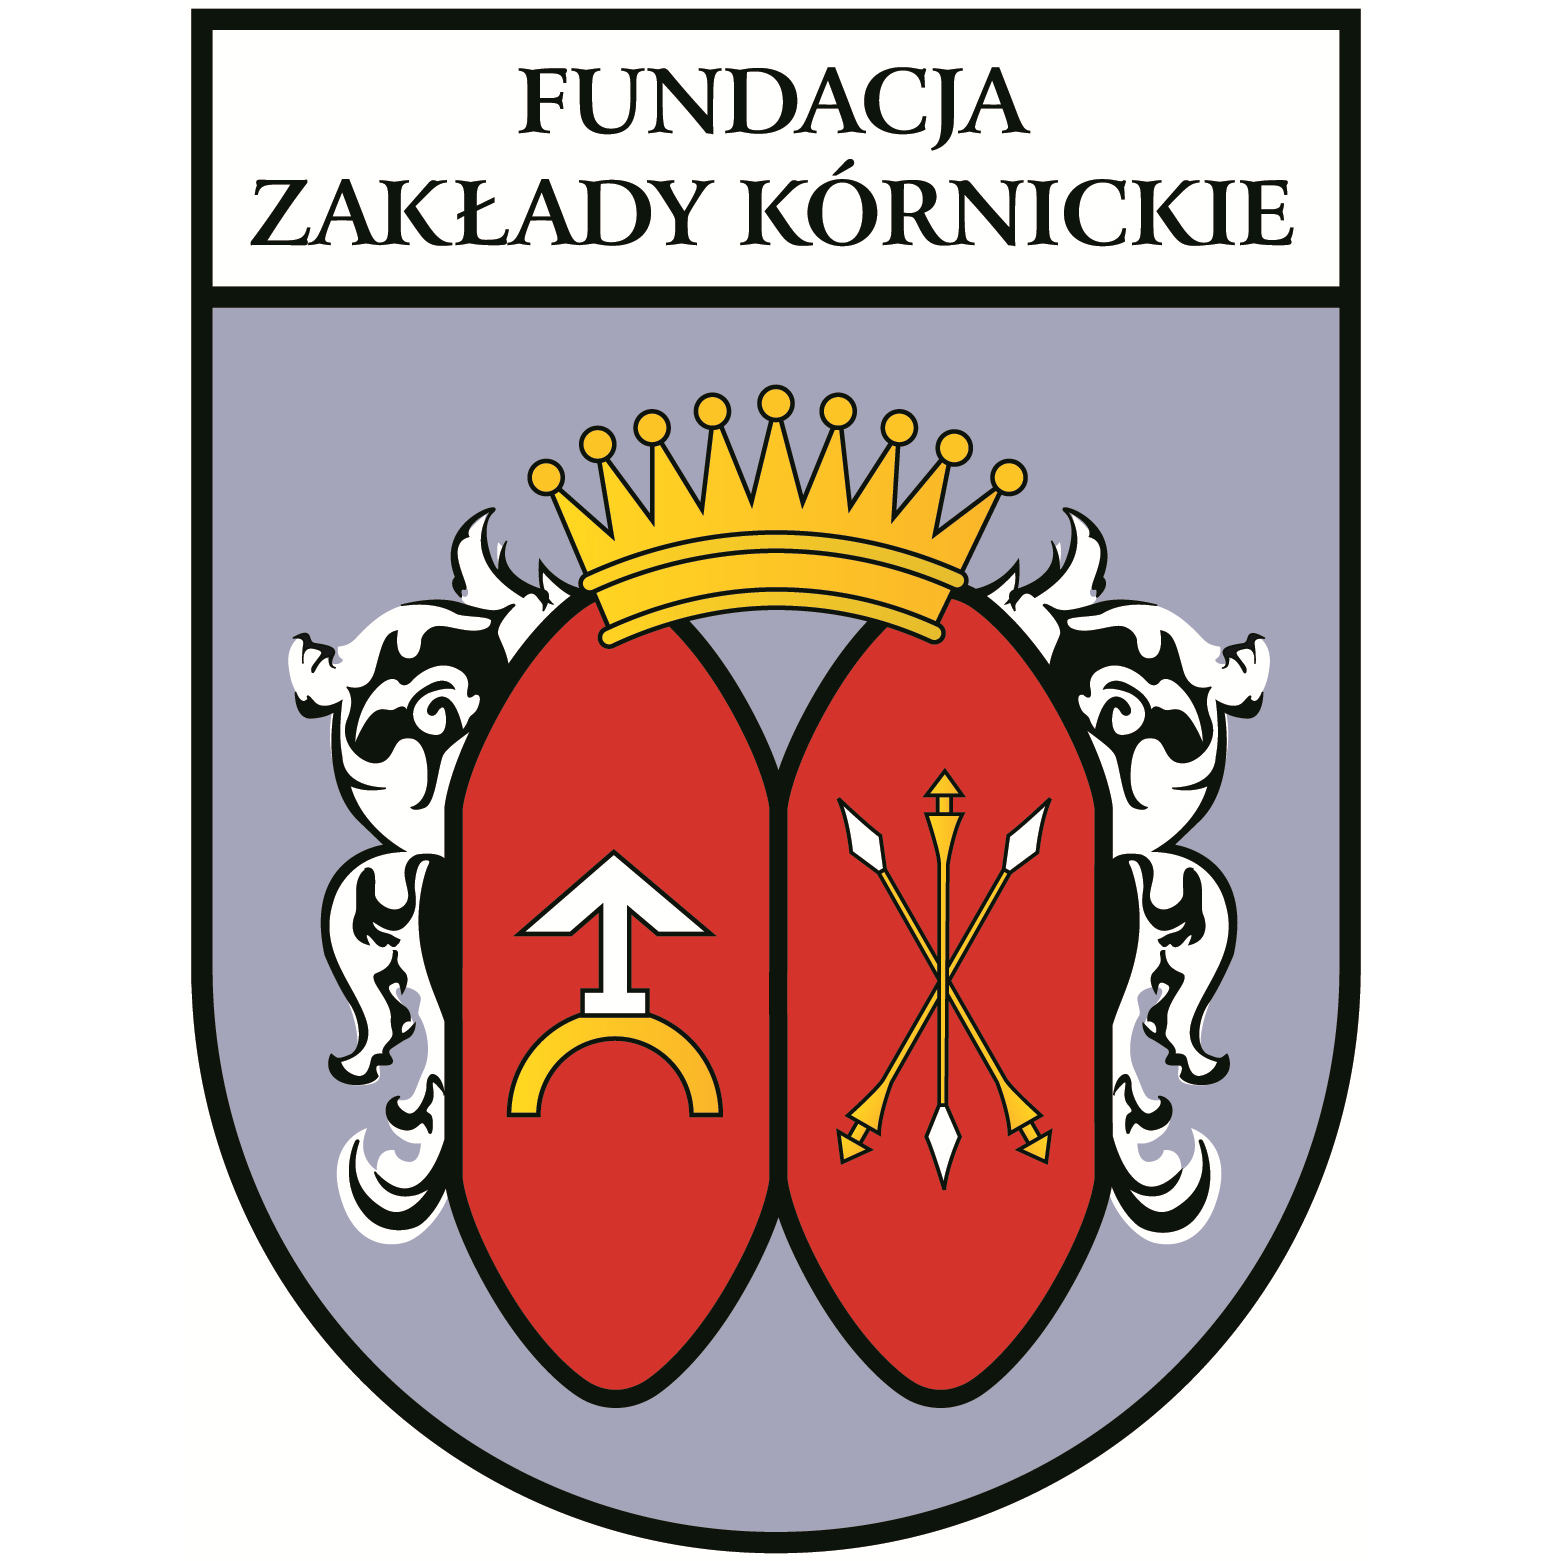 Fundacja Zakłady Kórnickie